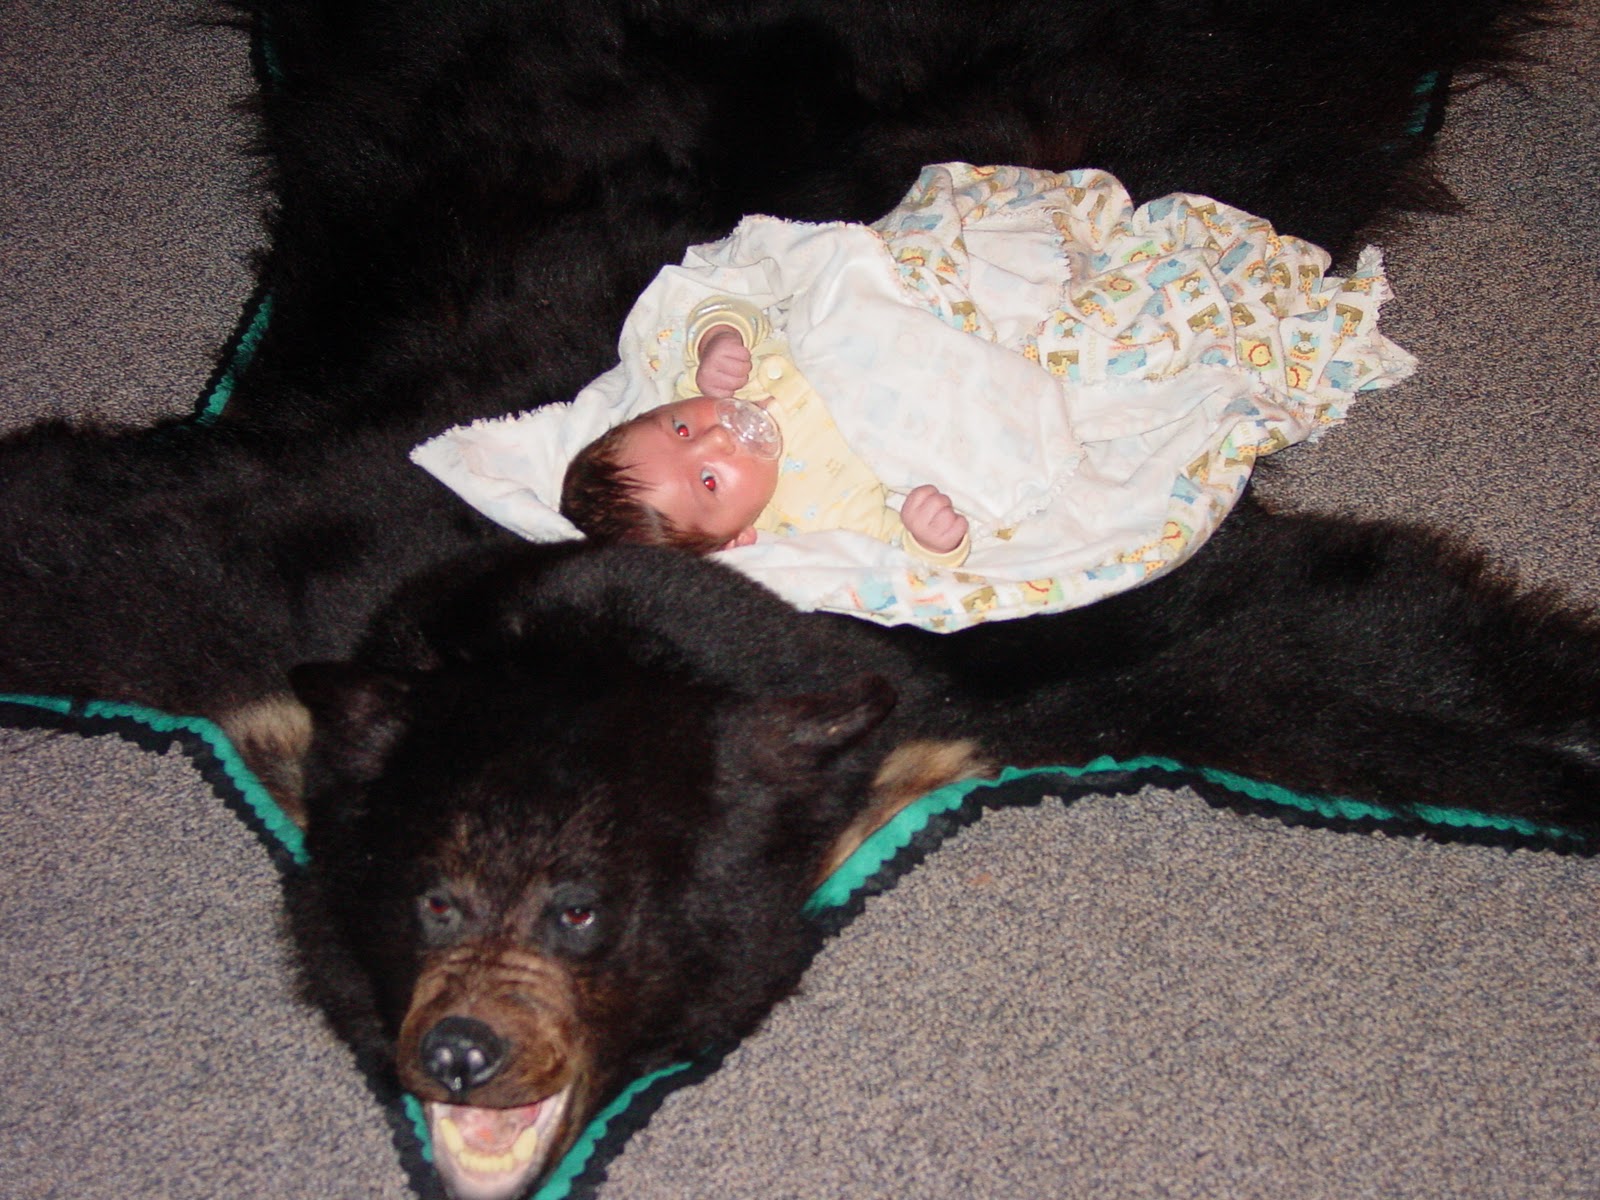 DearMYRTLE's Genealogy Blog: Babies and bearskin rugs